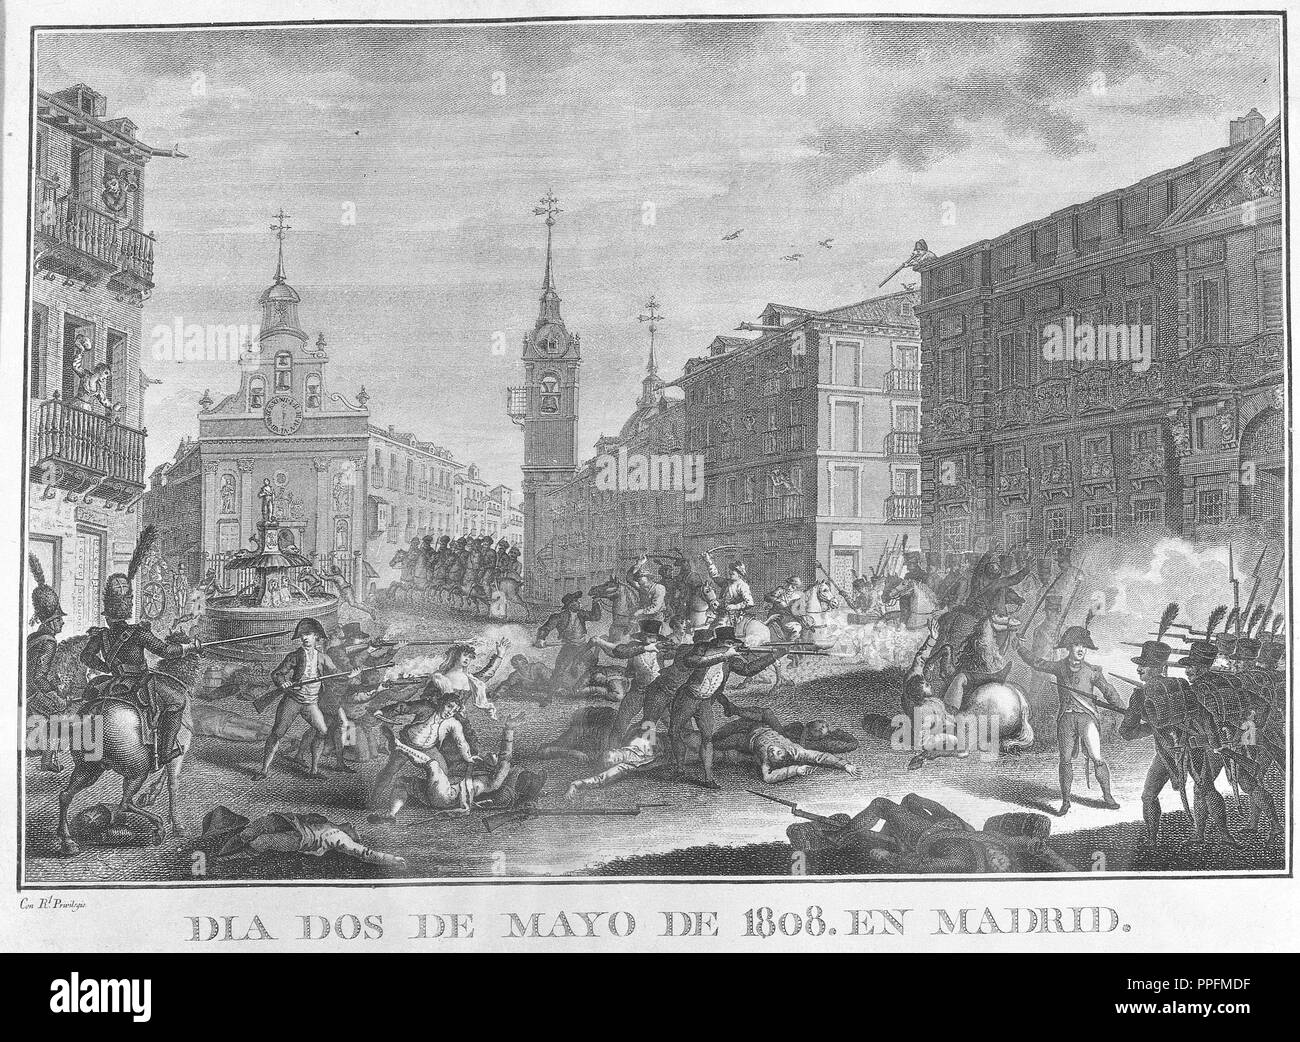 DIA DOS DE  MAYO DE 1808 EN MADRID - GRABADO SIGLO XIX. Location: MUSEO ROMANTICO-GRABADO. Stock Photo